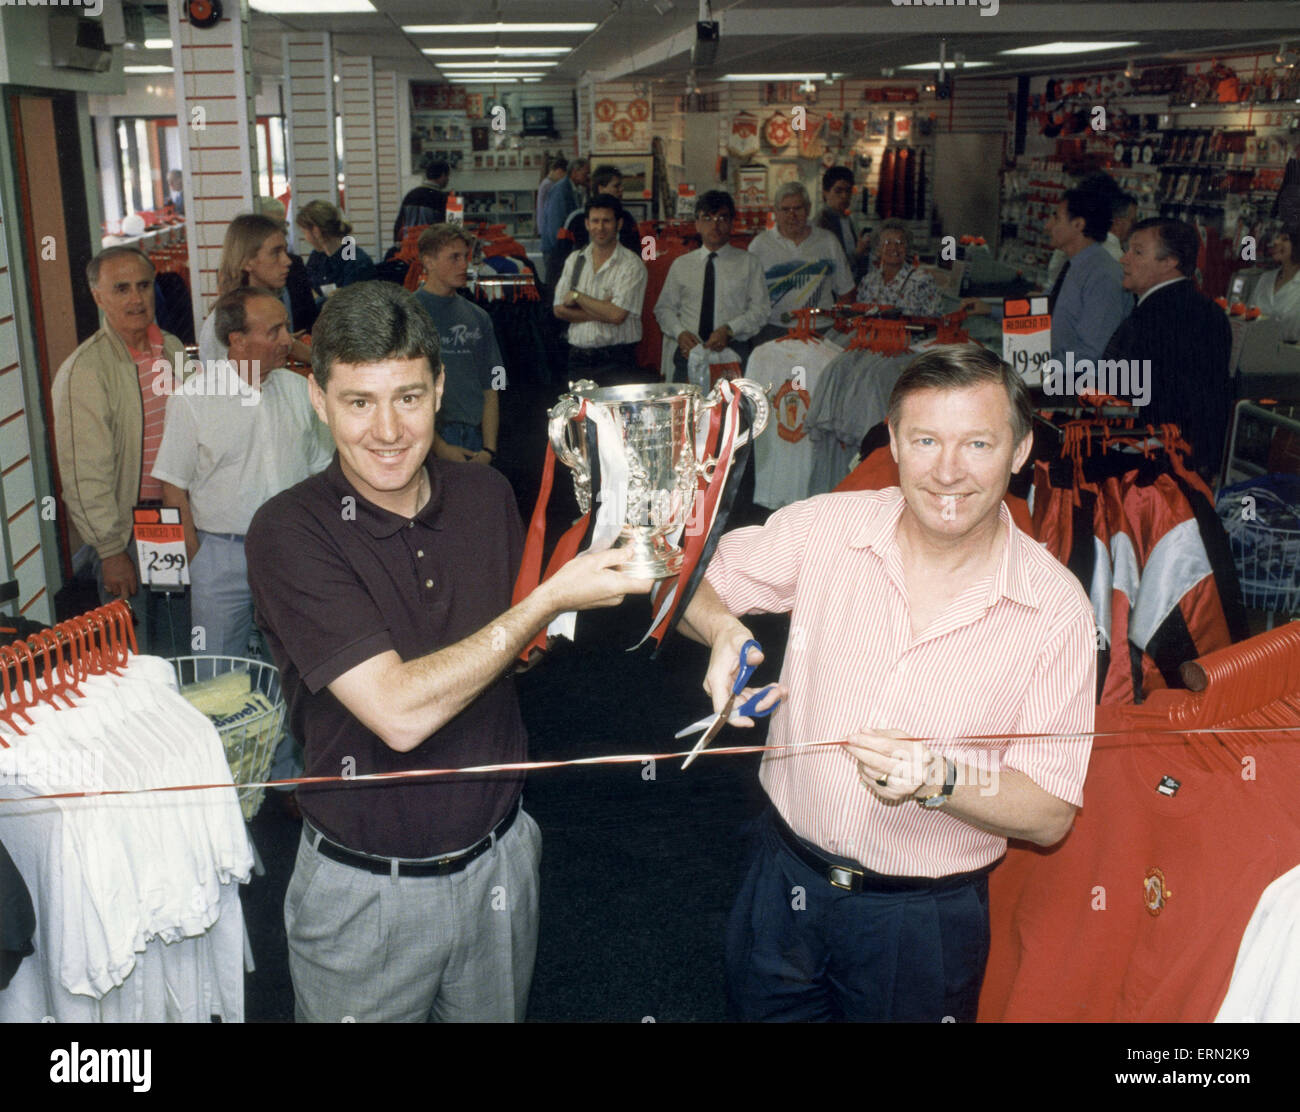 Manchester United-Trainer Alex Ferguson mit Co-Trainer hält den League Cup Trophäe, wie sie eine überarbeitete Red Devils-Souvenir öffnen shop im Old Trafford nach Unterzeichnung merchandising Manager Edward Freeman um ihre Souvenirshop betreiben. Mai 1992. Stockfoto